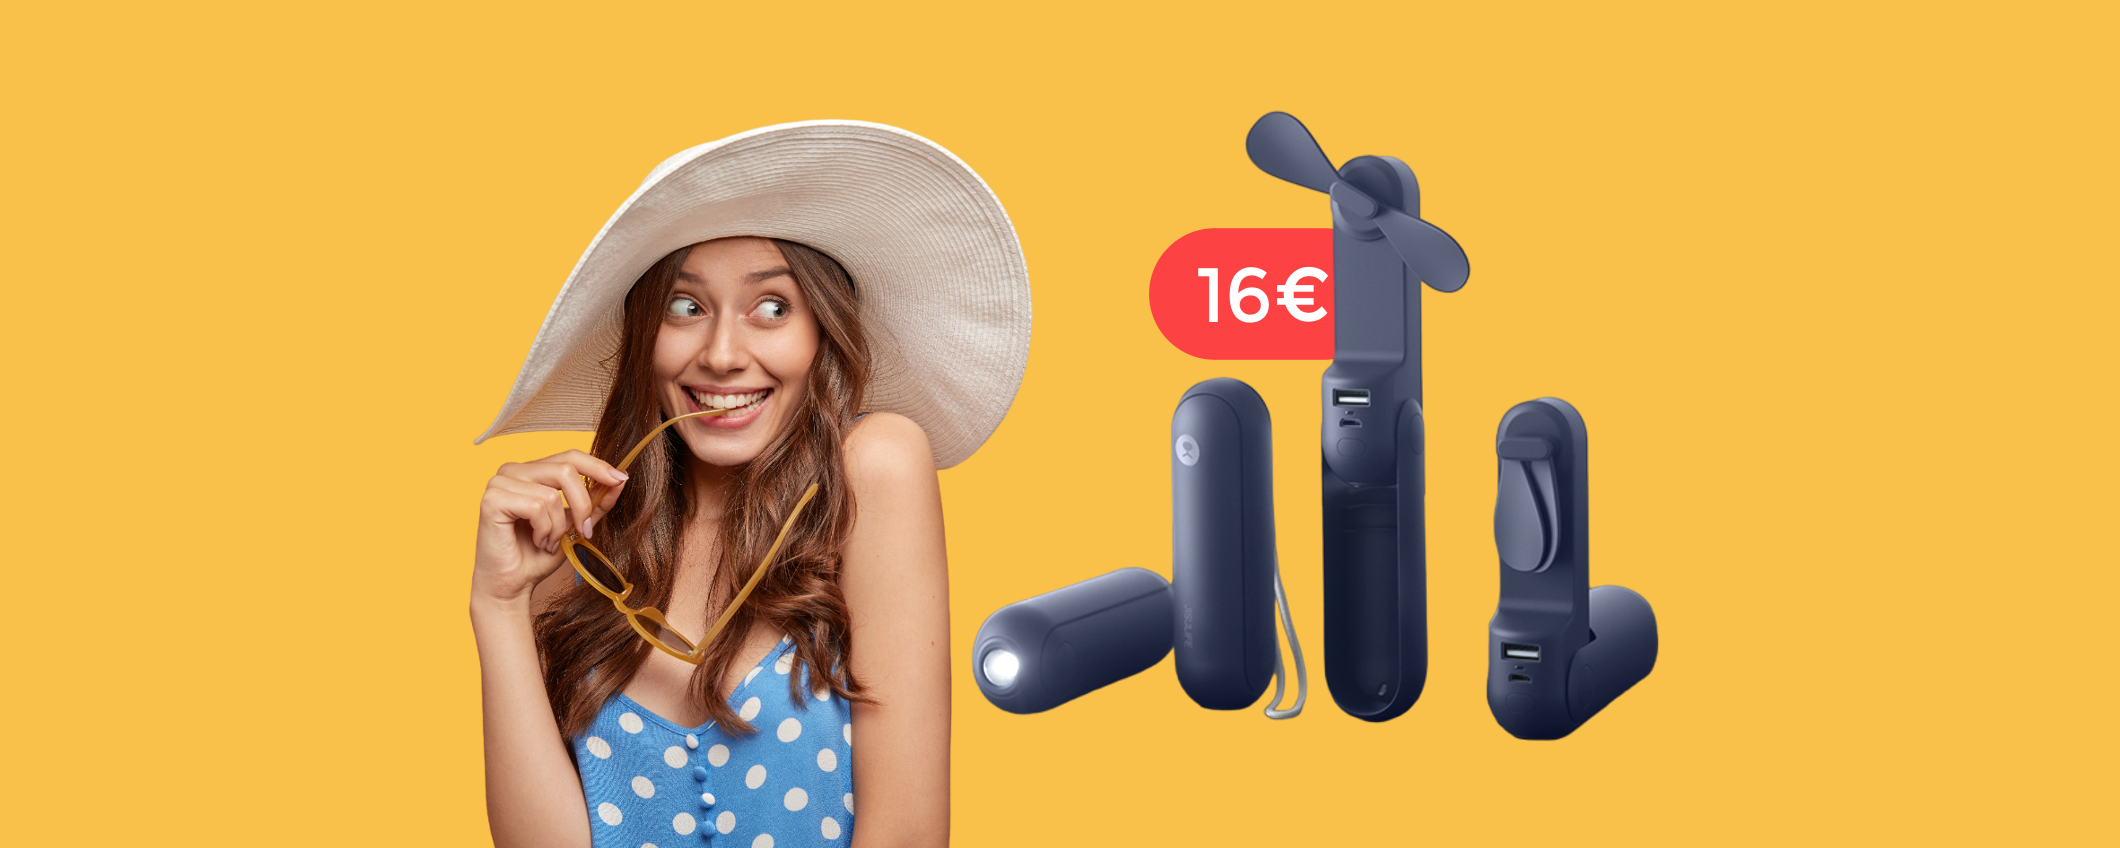 Ventilatore tascabile a 16€: lo usi anche come torcia o powerbank